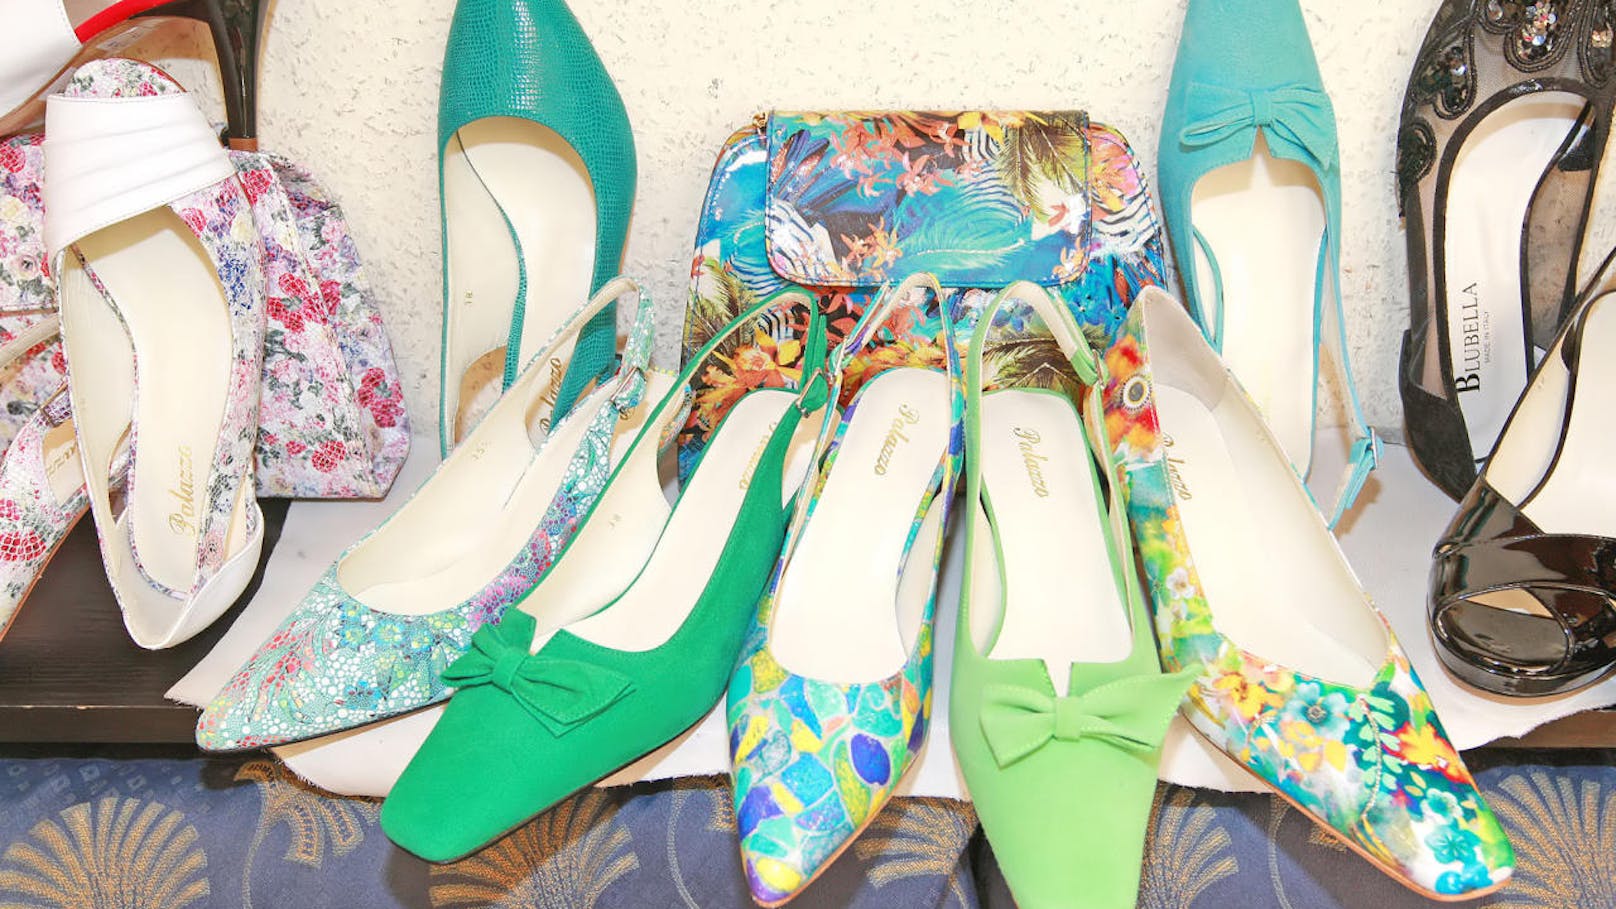 Sonja Schönanger ist spezialisiert auf Farben und entwirft auch die Designs ihrer Schuhe